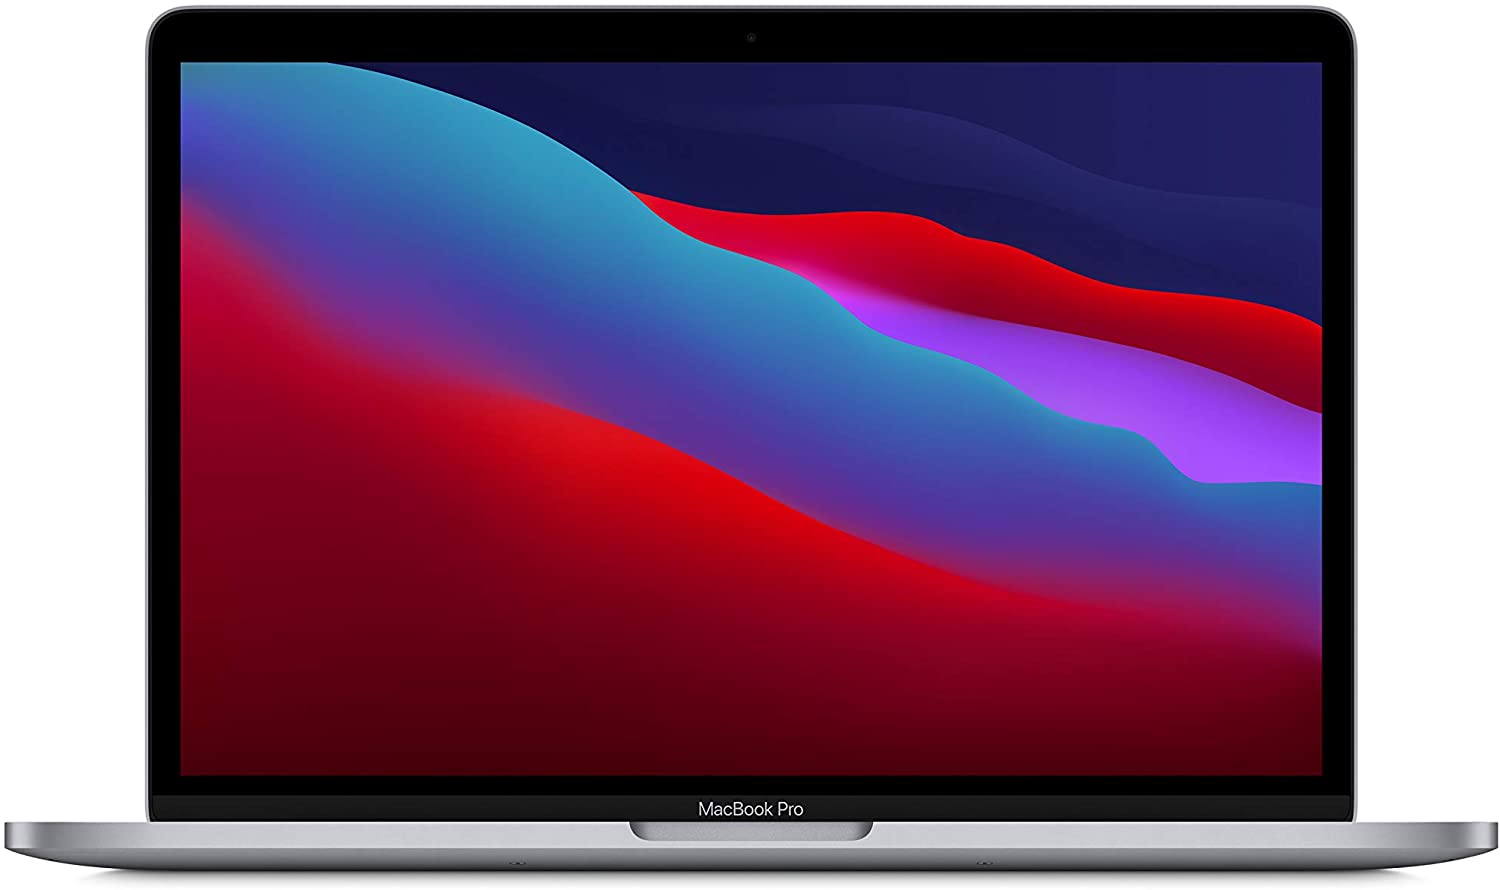 Le MacBook Pro 13 pouces de Apple avec la puce M1 : un des outils les plus performants de 2021 pour un créateur nomade. Le ratio poids/encombrement/ performance et vraiment incroyable.